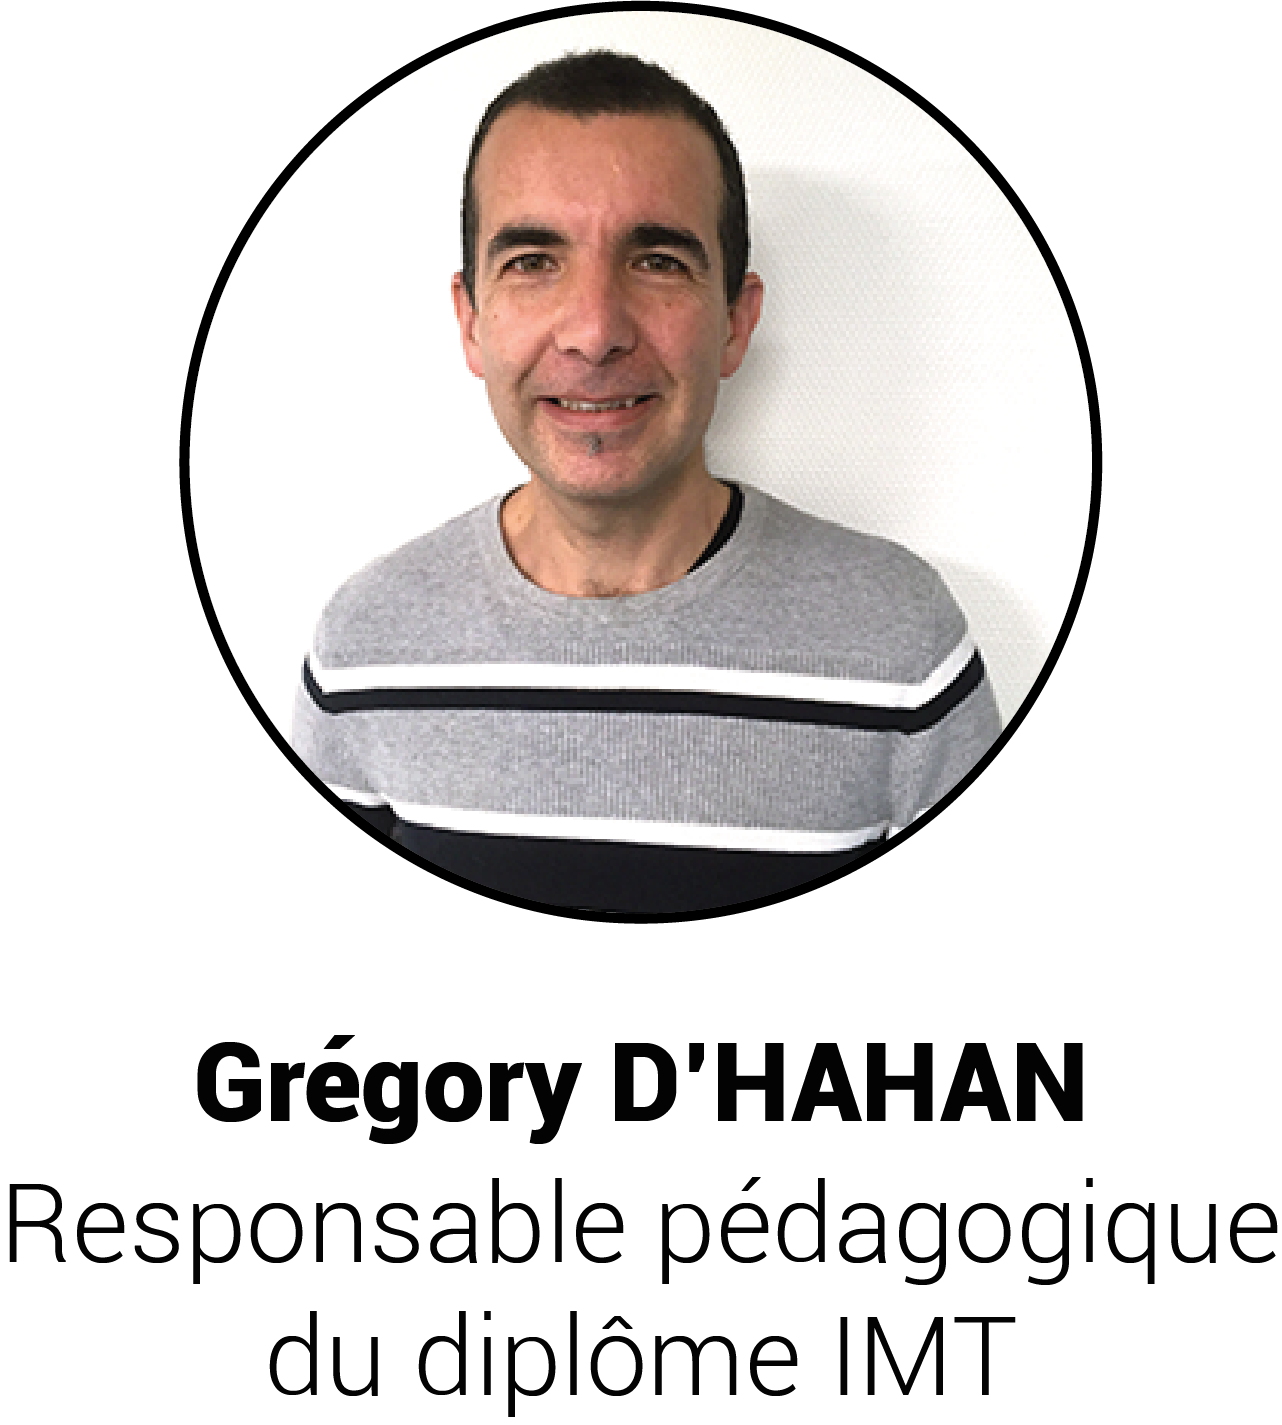 Grégory D’HAHAN - Responsable pédagogique du diplôme IMT